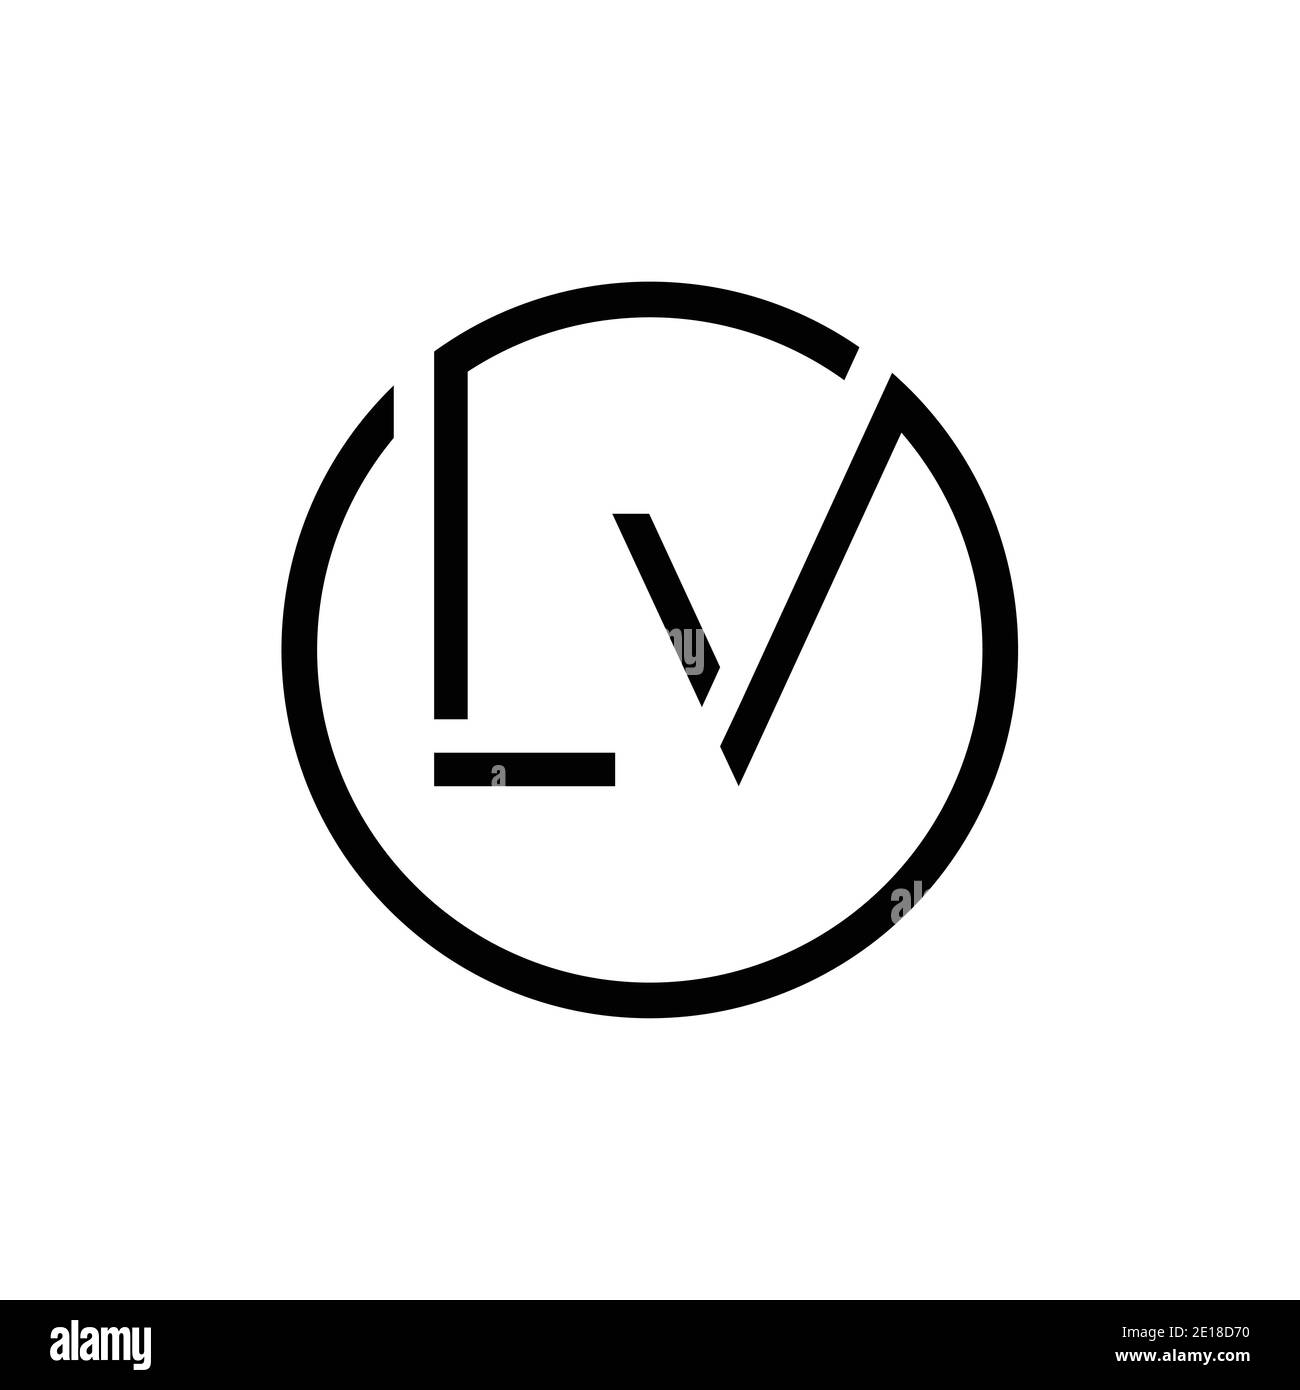 black white initial letter L V Love logo